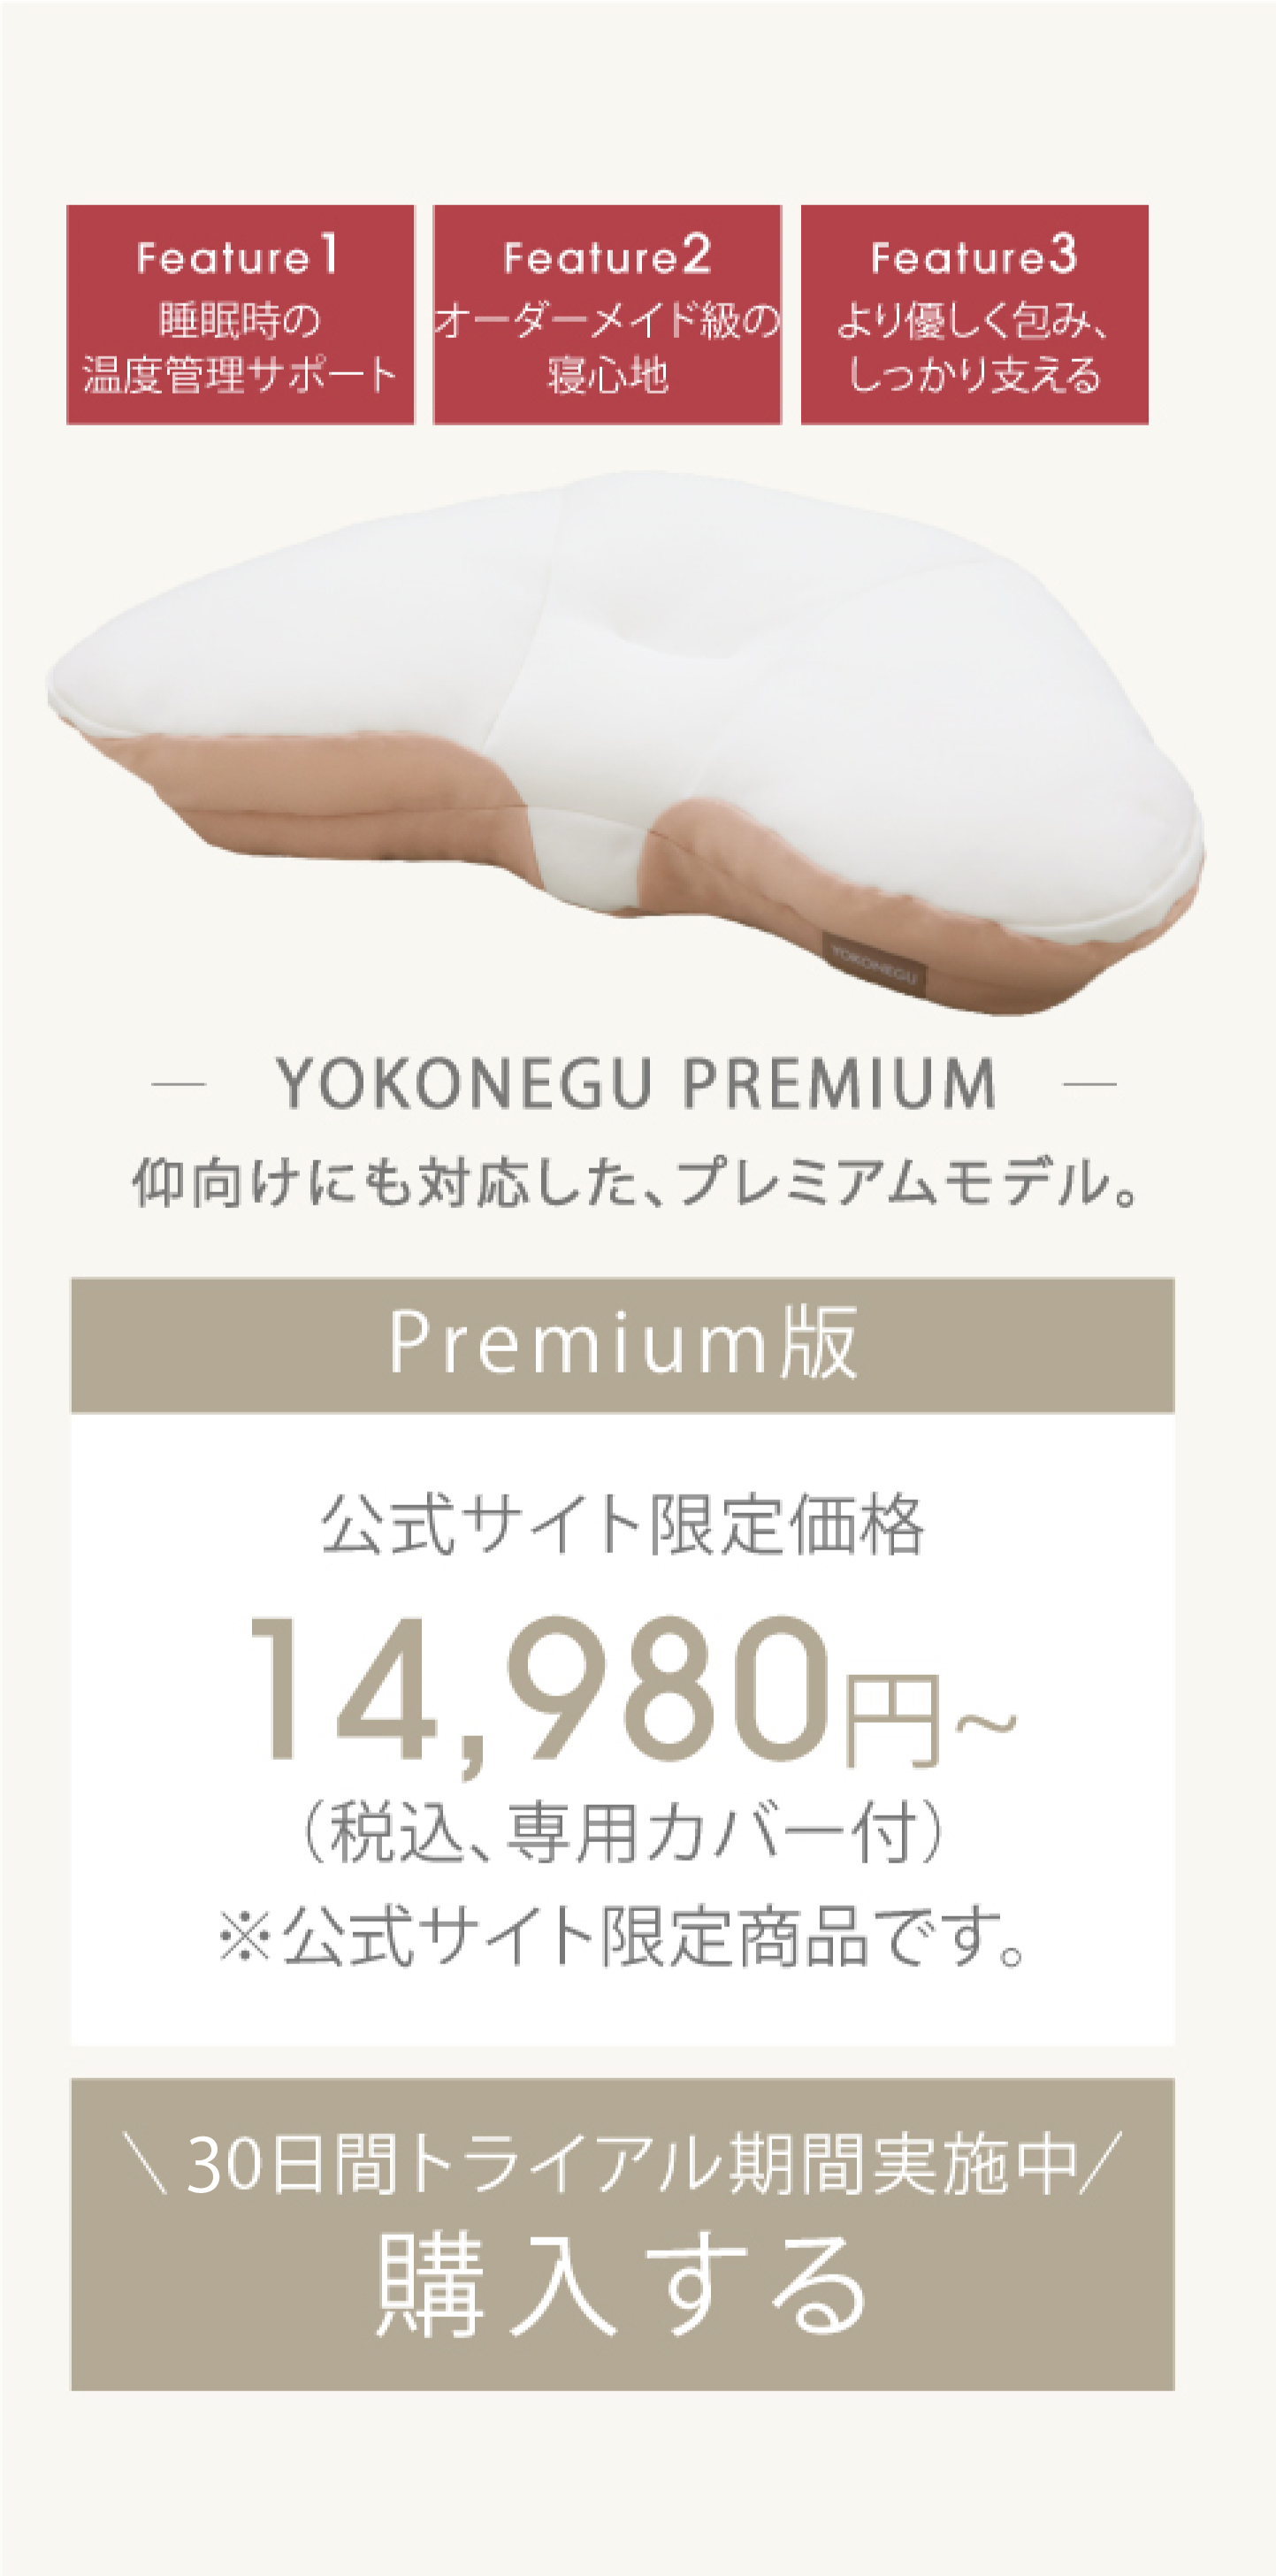 YOKONEGU PREMIUM 仰向けにも対応した、プレミアムモデル